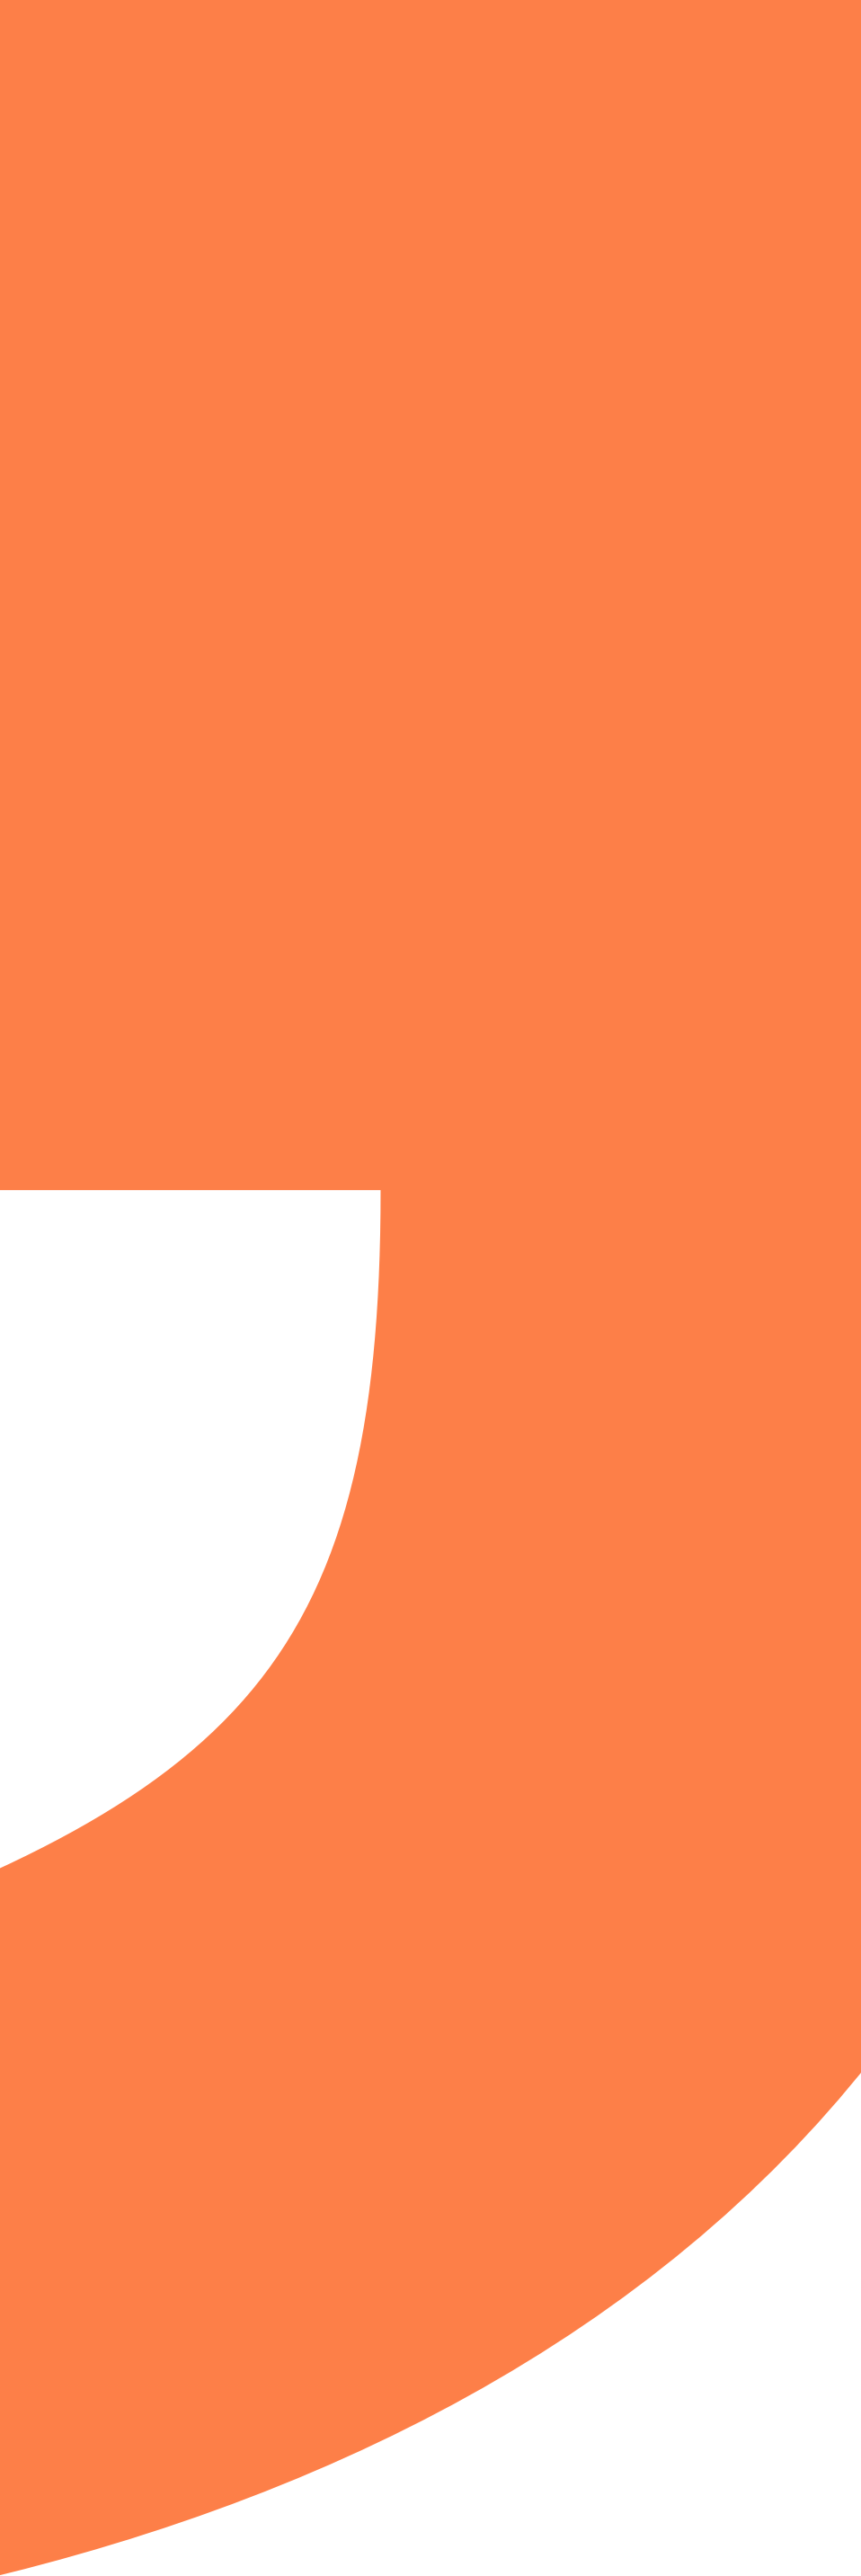 Orange D shape background